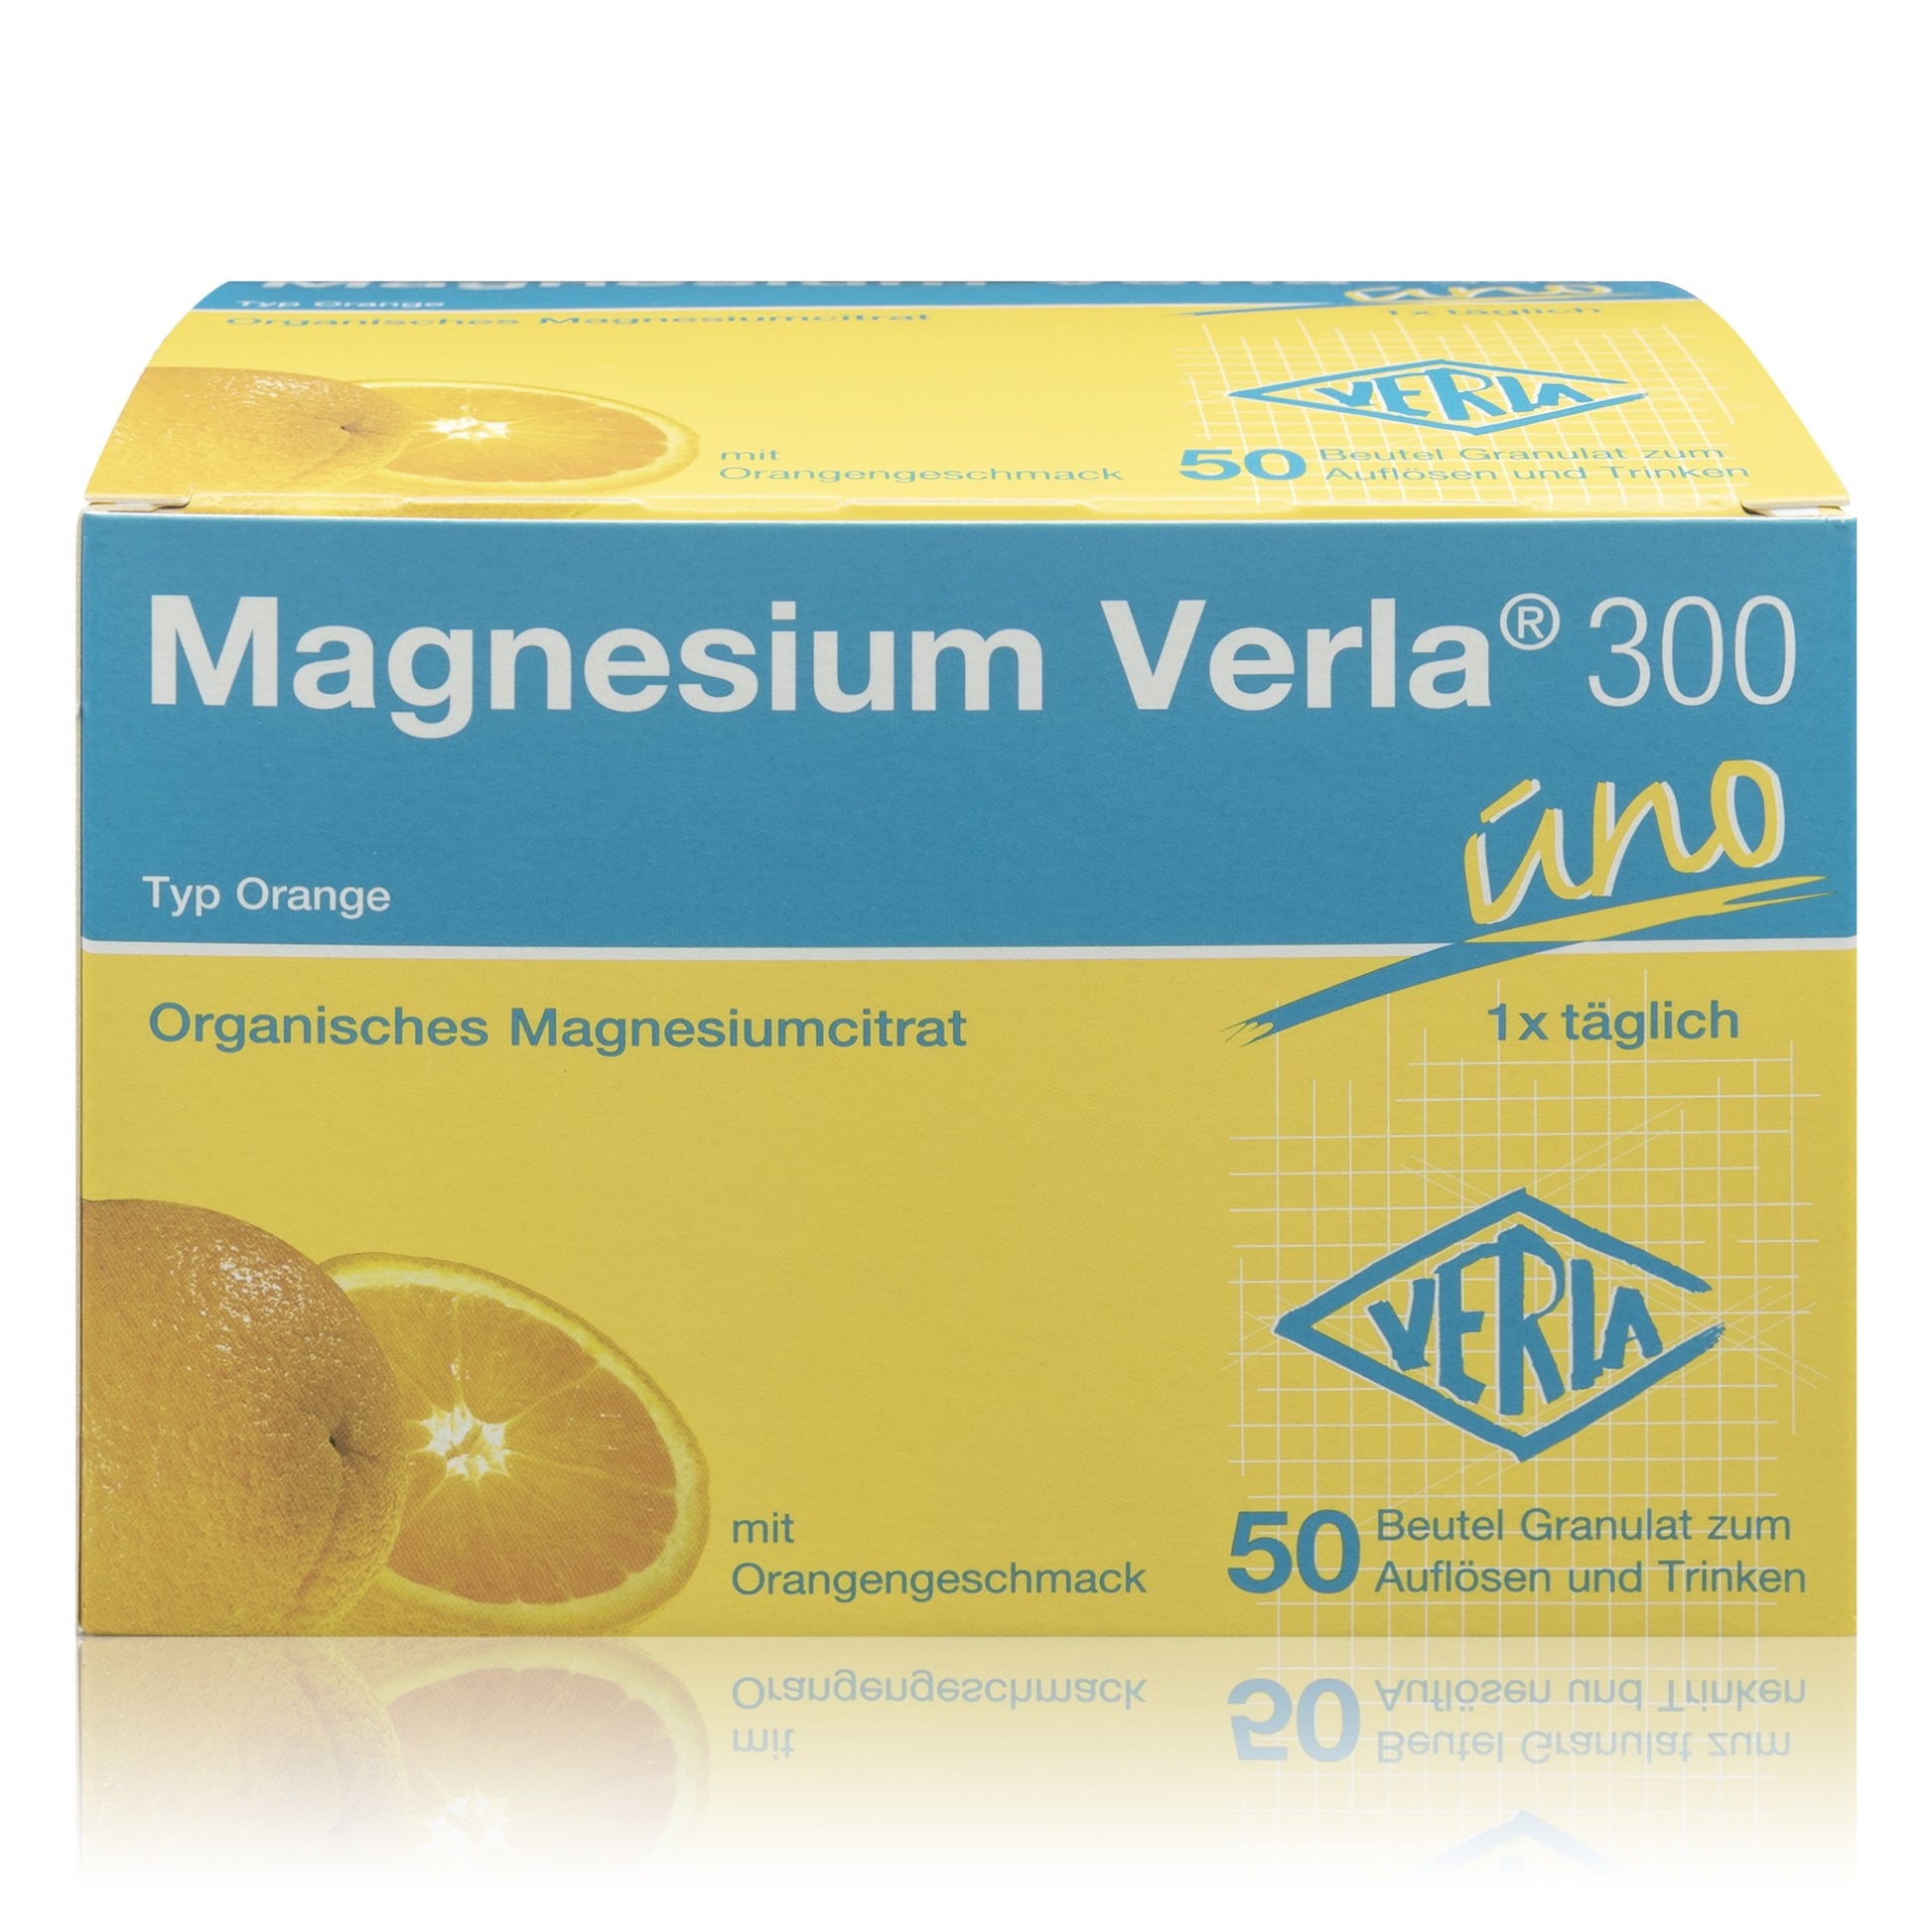 Magnesium Verla 300 uno - Typ Orange (50 St.) - ROTE.PLACE